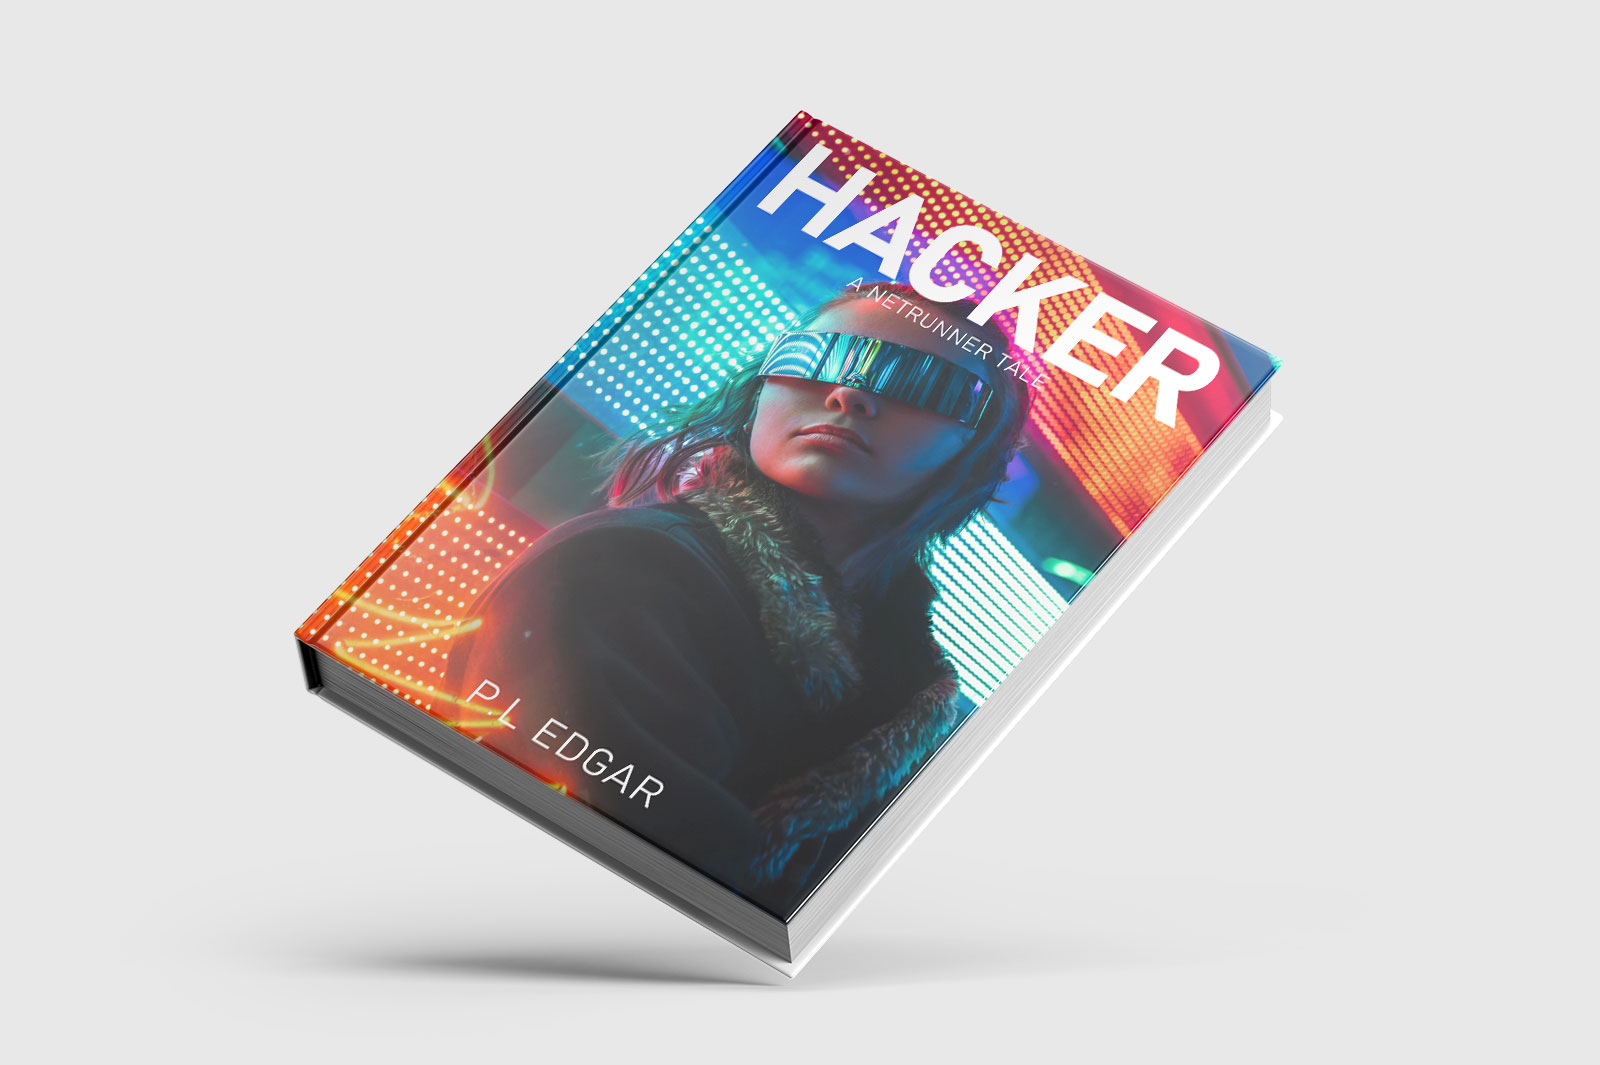 Cyber punk book cover